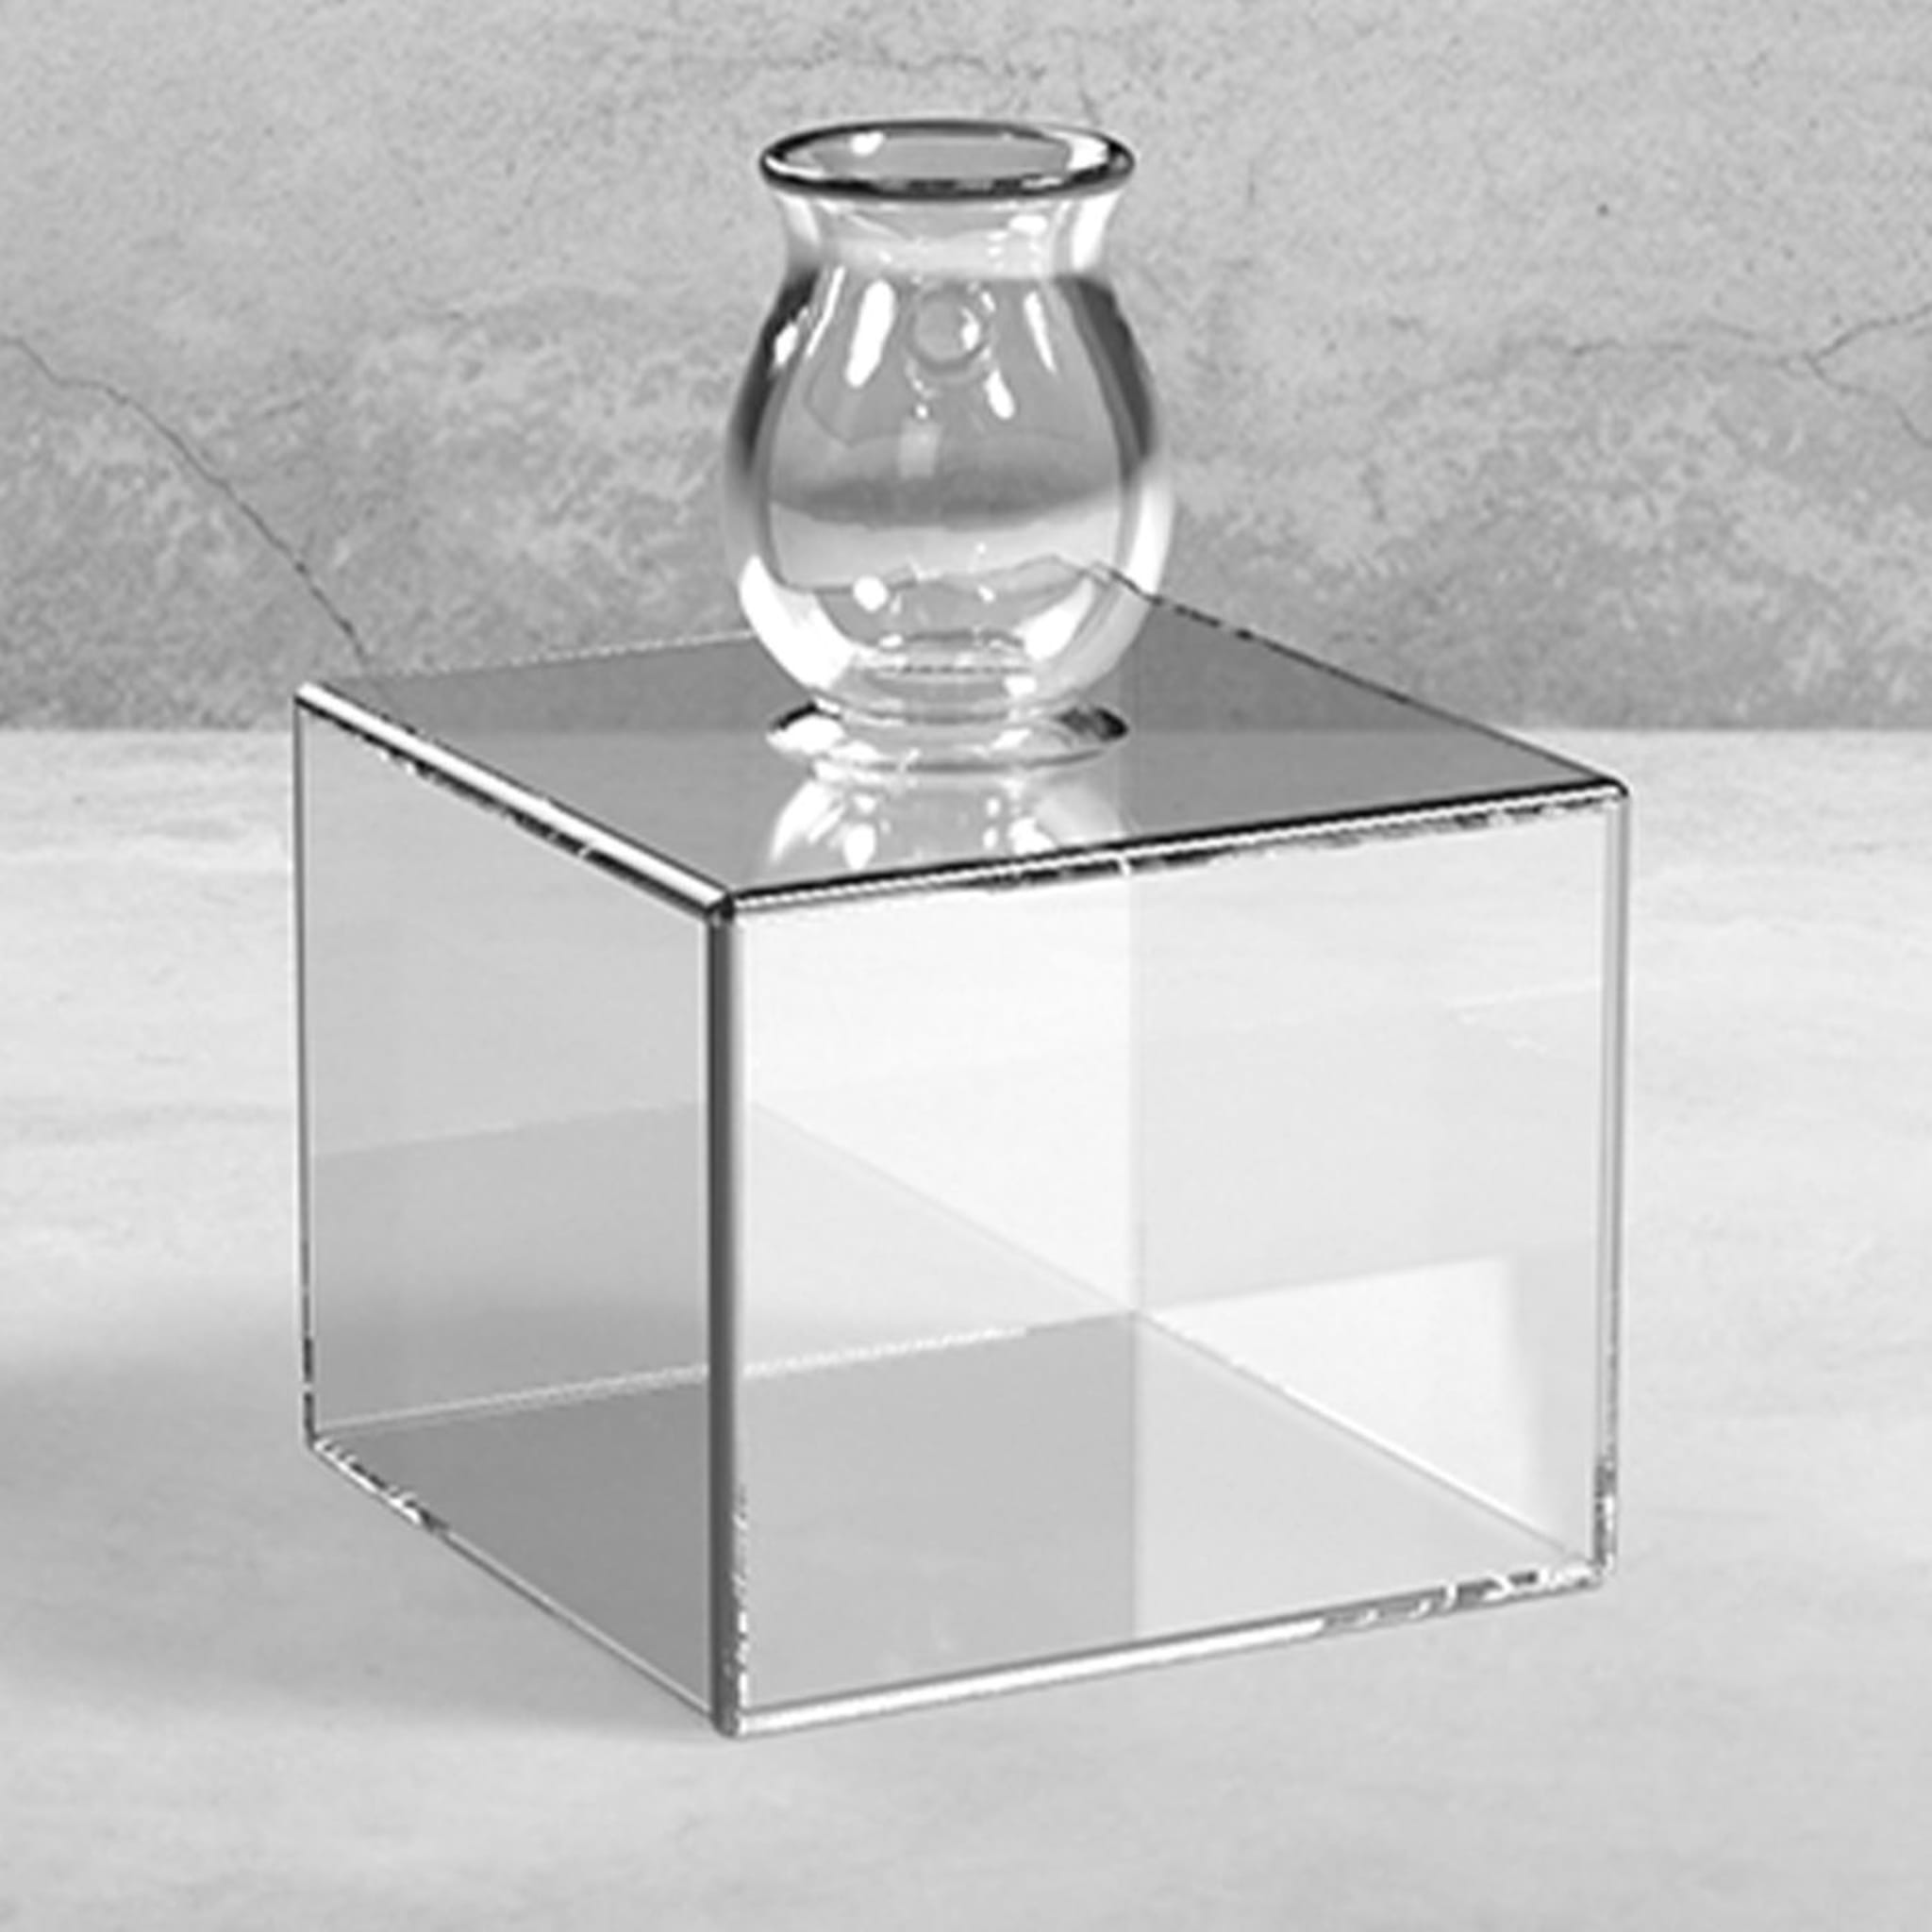 Milo Square-Based Transparent Vase by Quaglio Simonelli - Alternative view 1